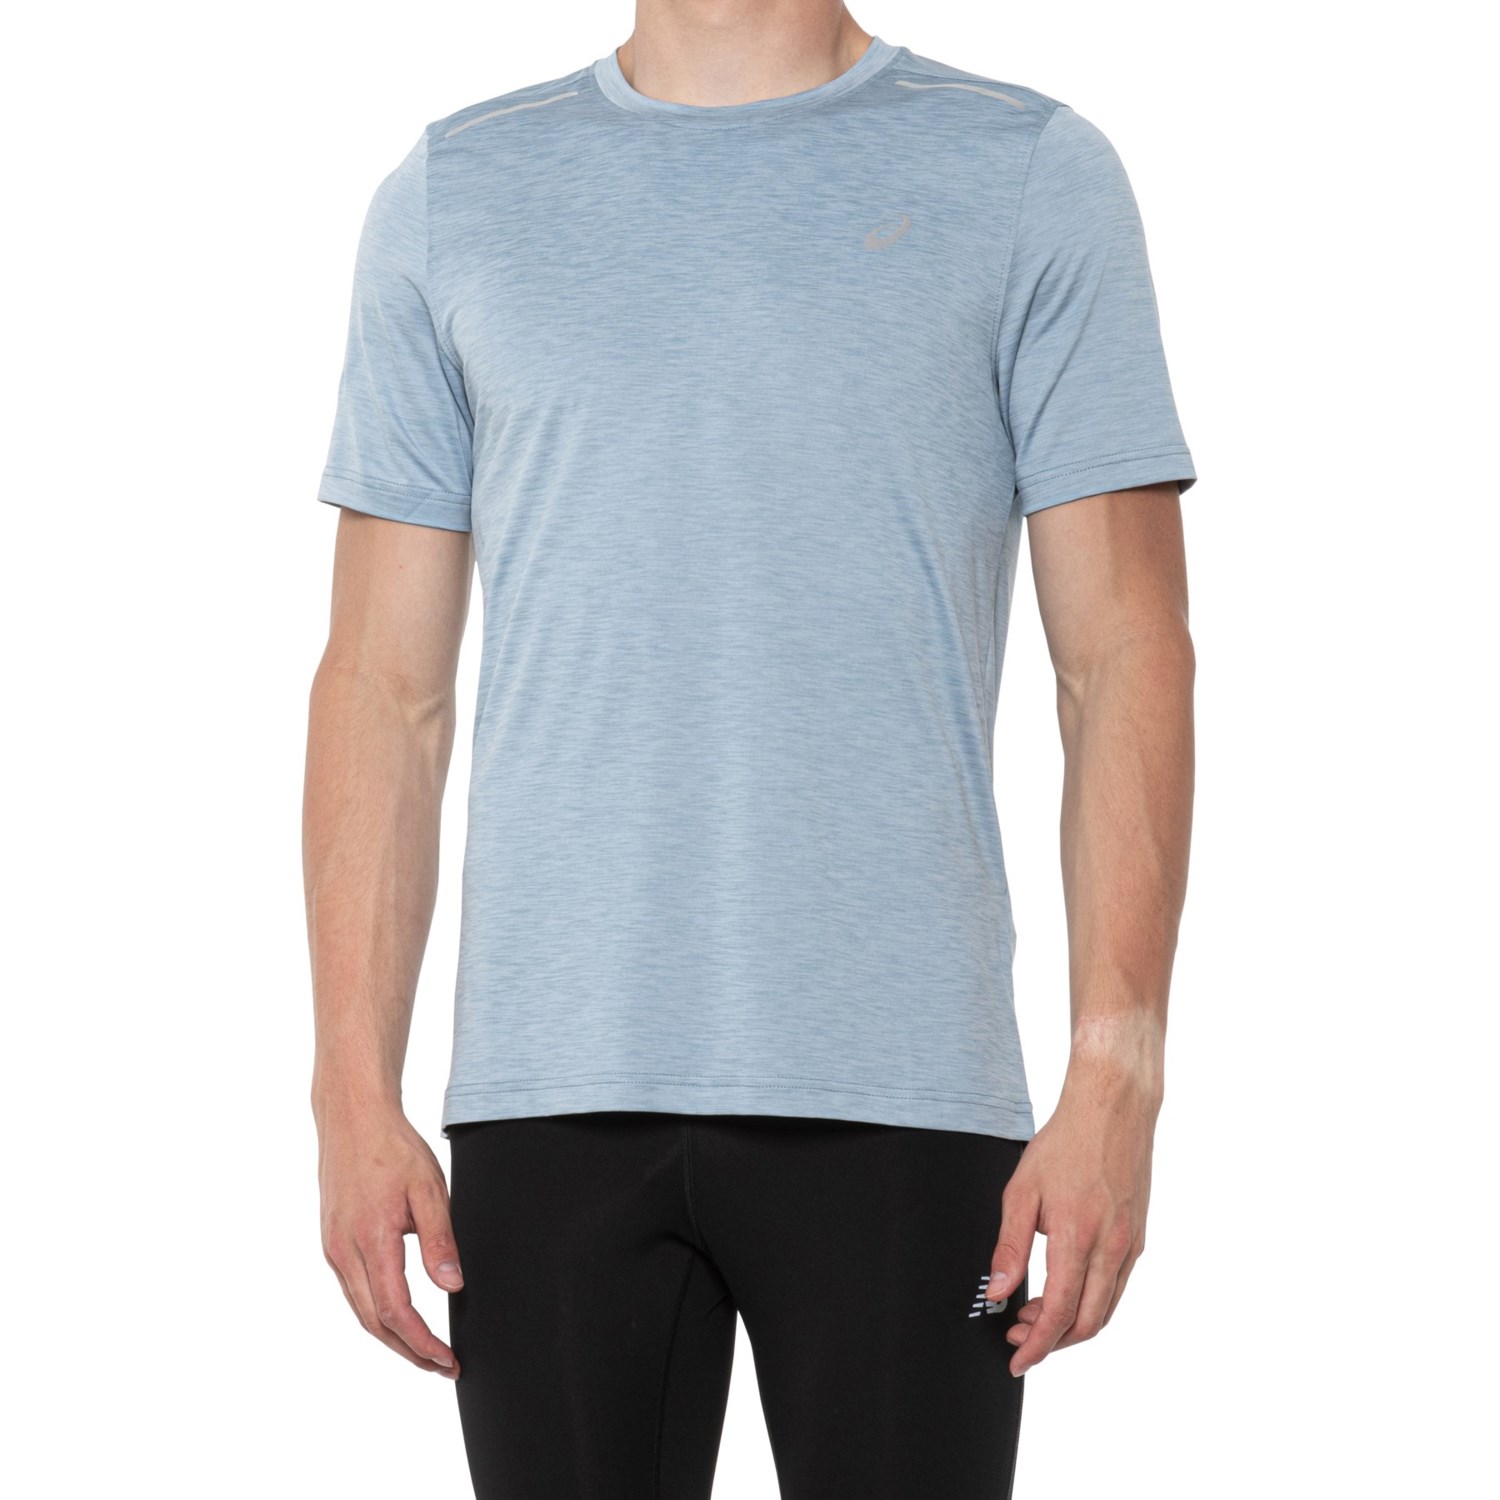 Space-Dye Basic Shirt - Short Sleeve (For Men)